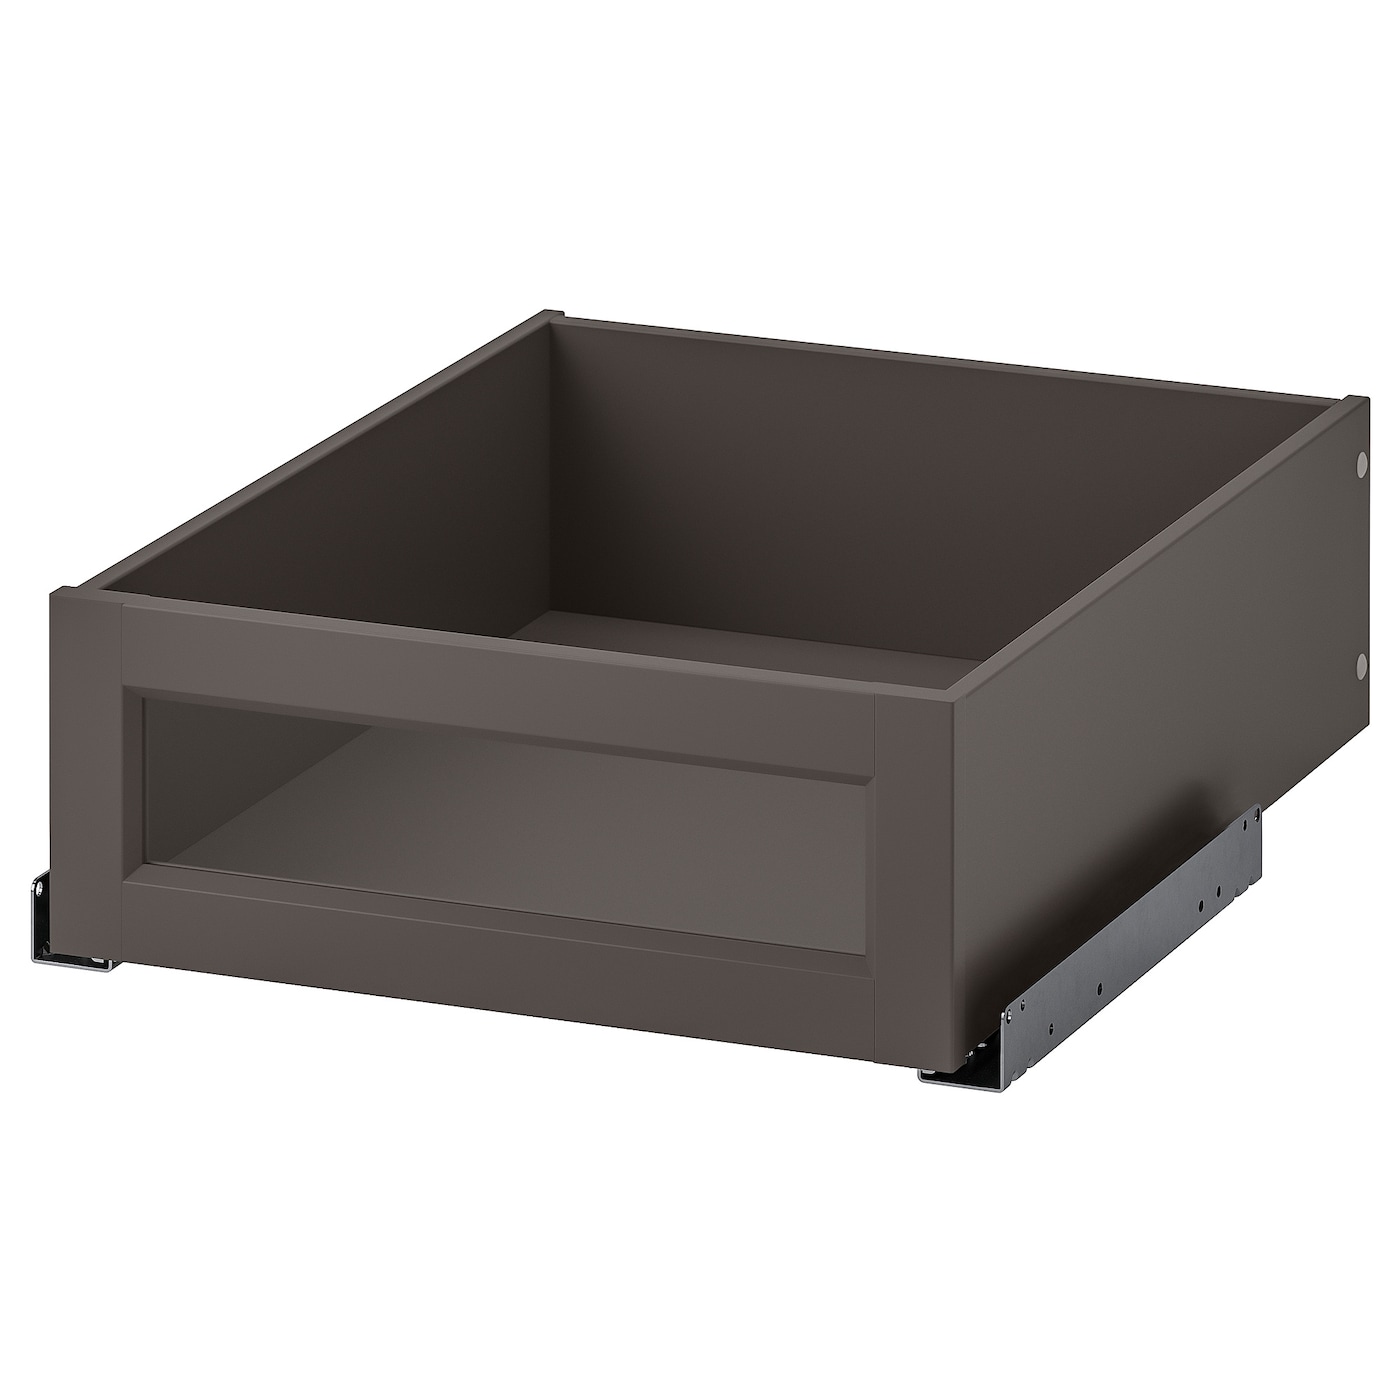 Ящик с фронтальной панелью - IKEA KOMPLEMENT, 50x58 см, темно-серый КОМПЛИМЕНТ ИКЕА